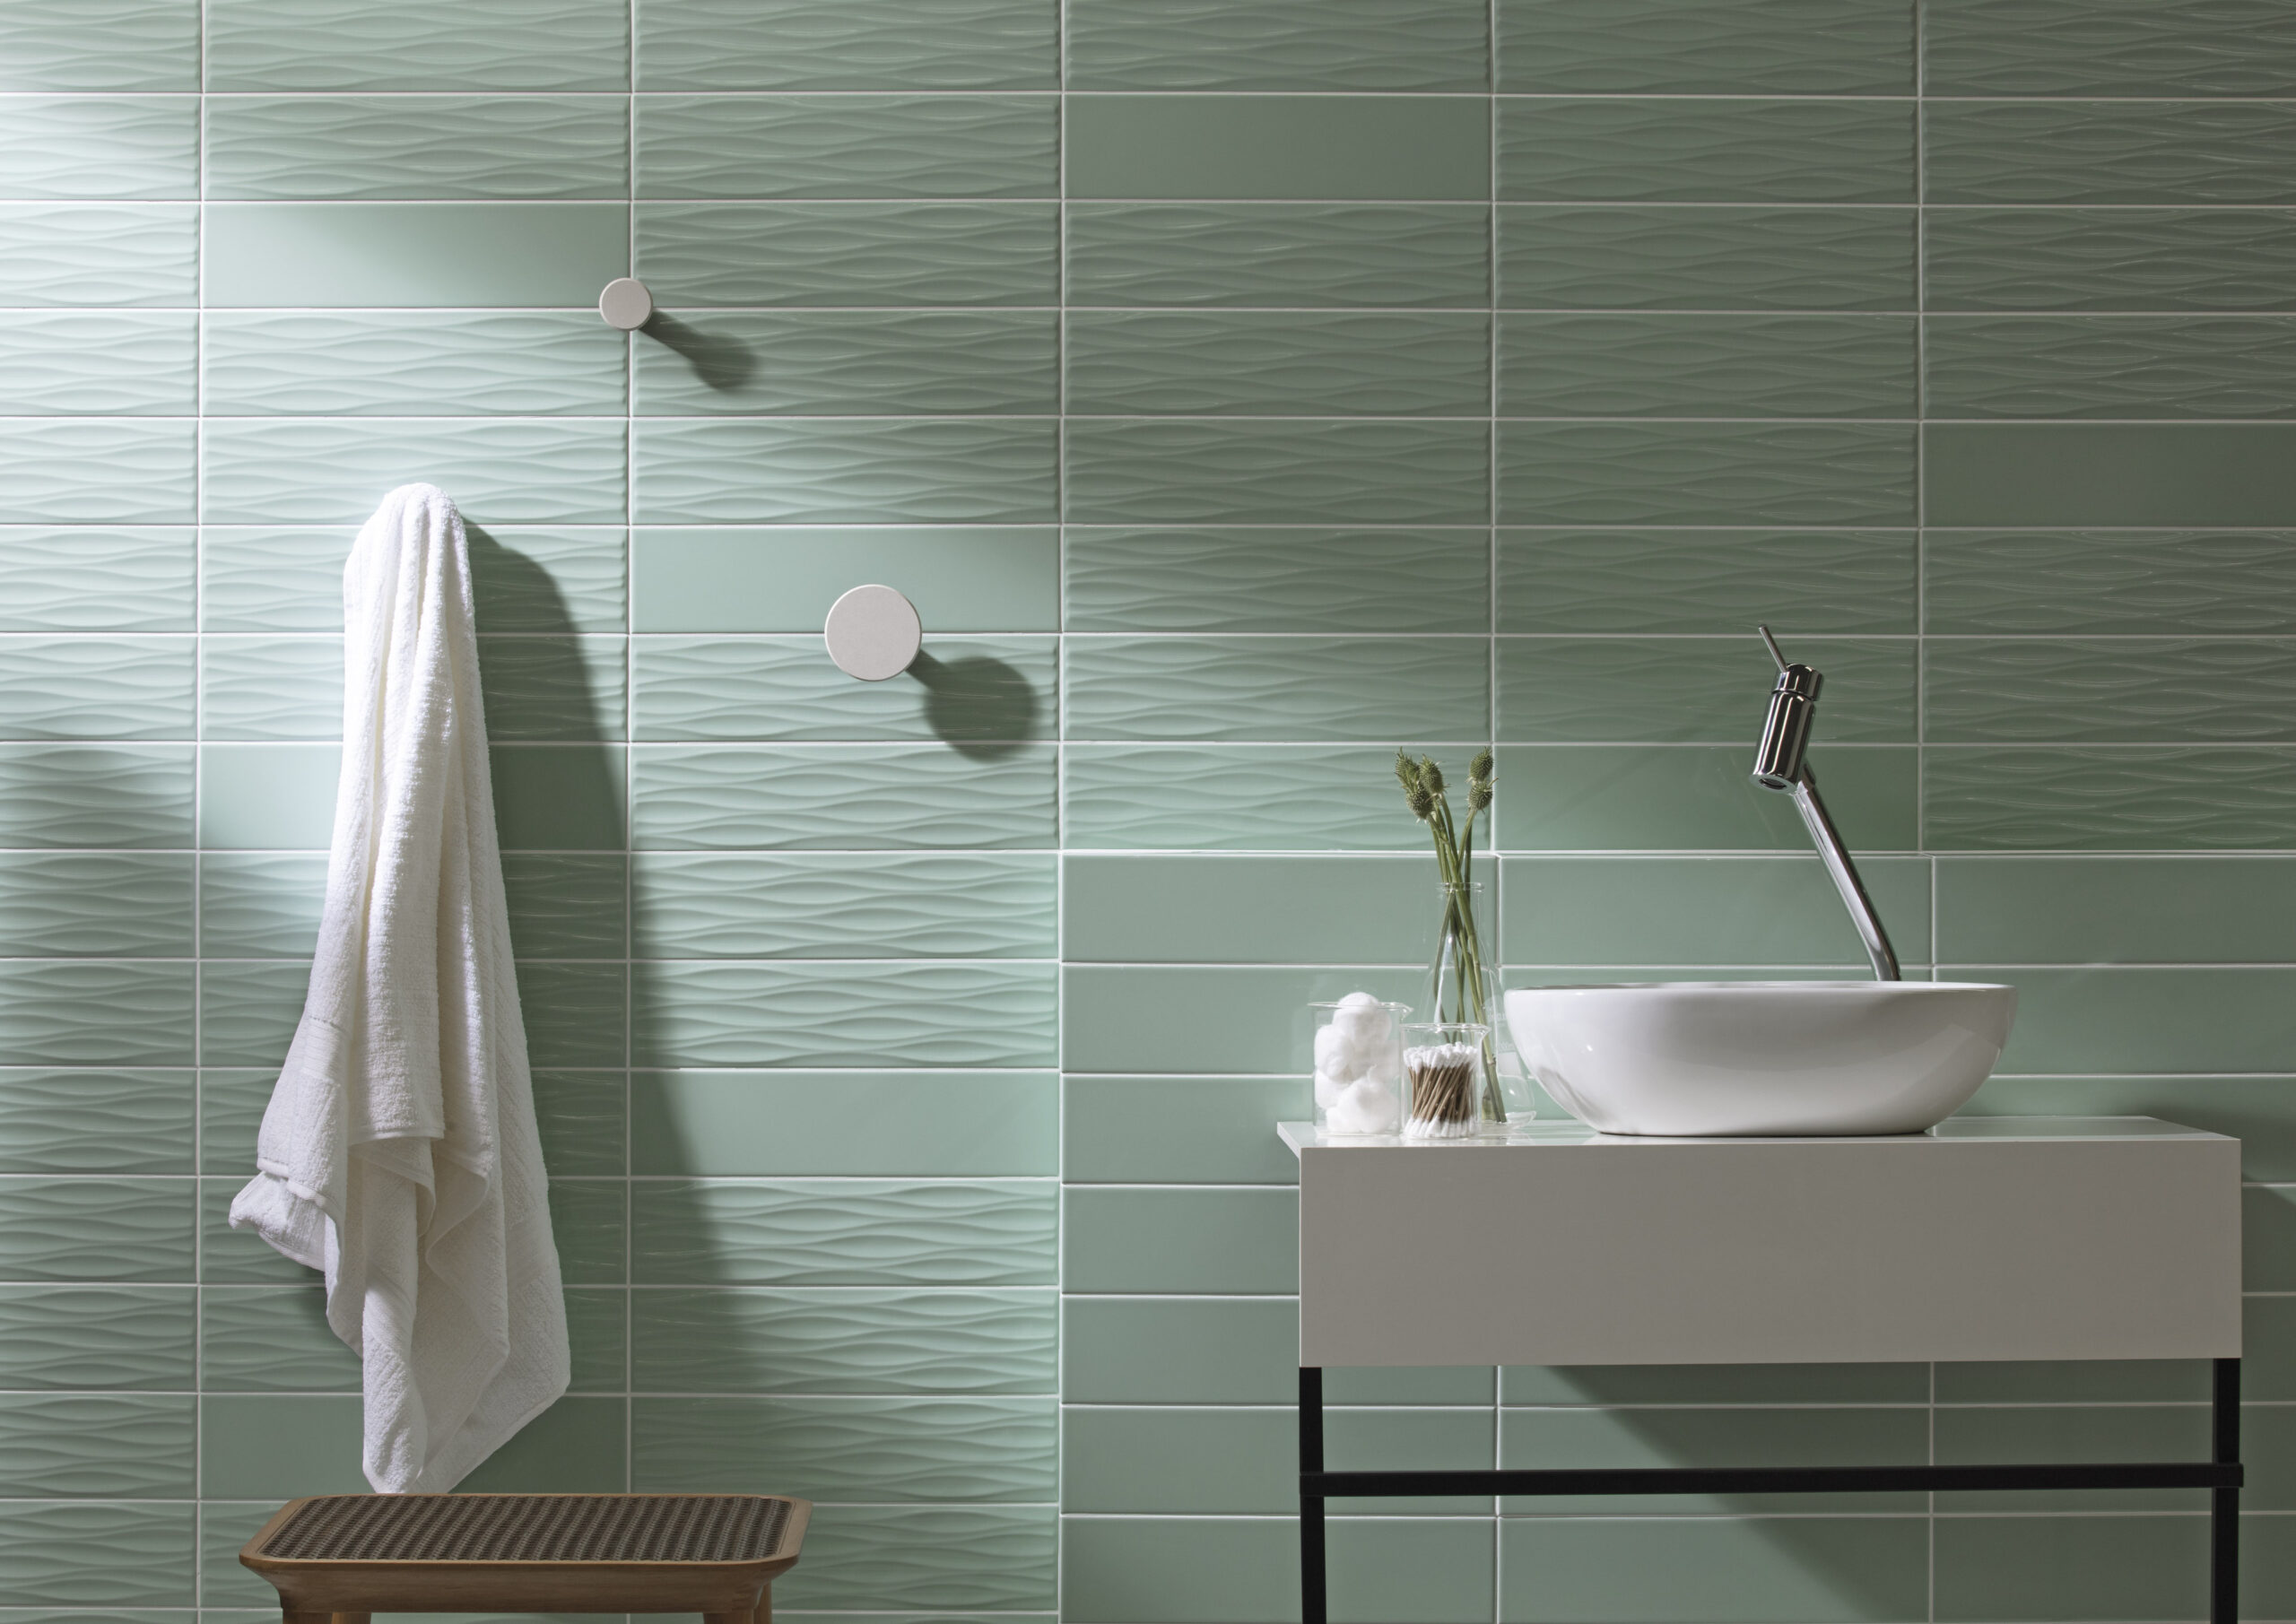 Os revestimentos com relevo proporcionam resultados muito interessantes nas paredes dos banheiros (Projeto: Portobello S.A.)